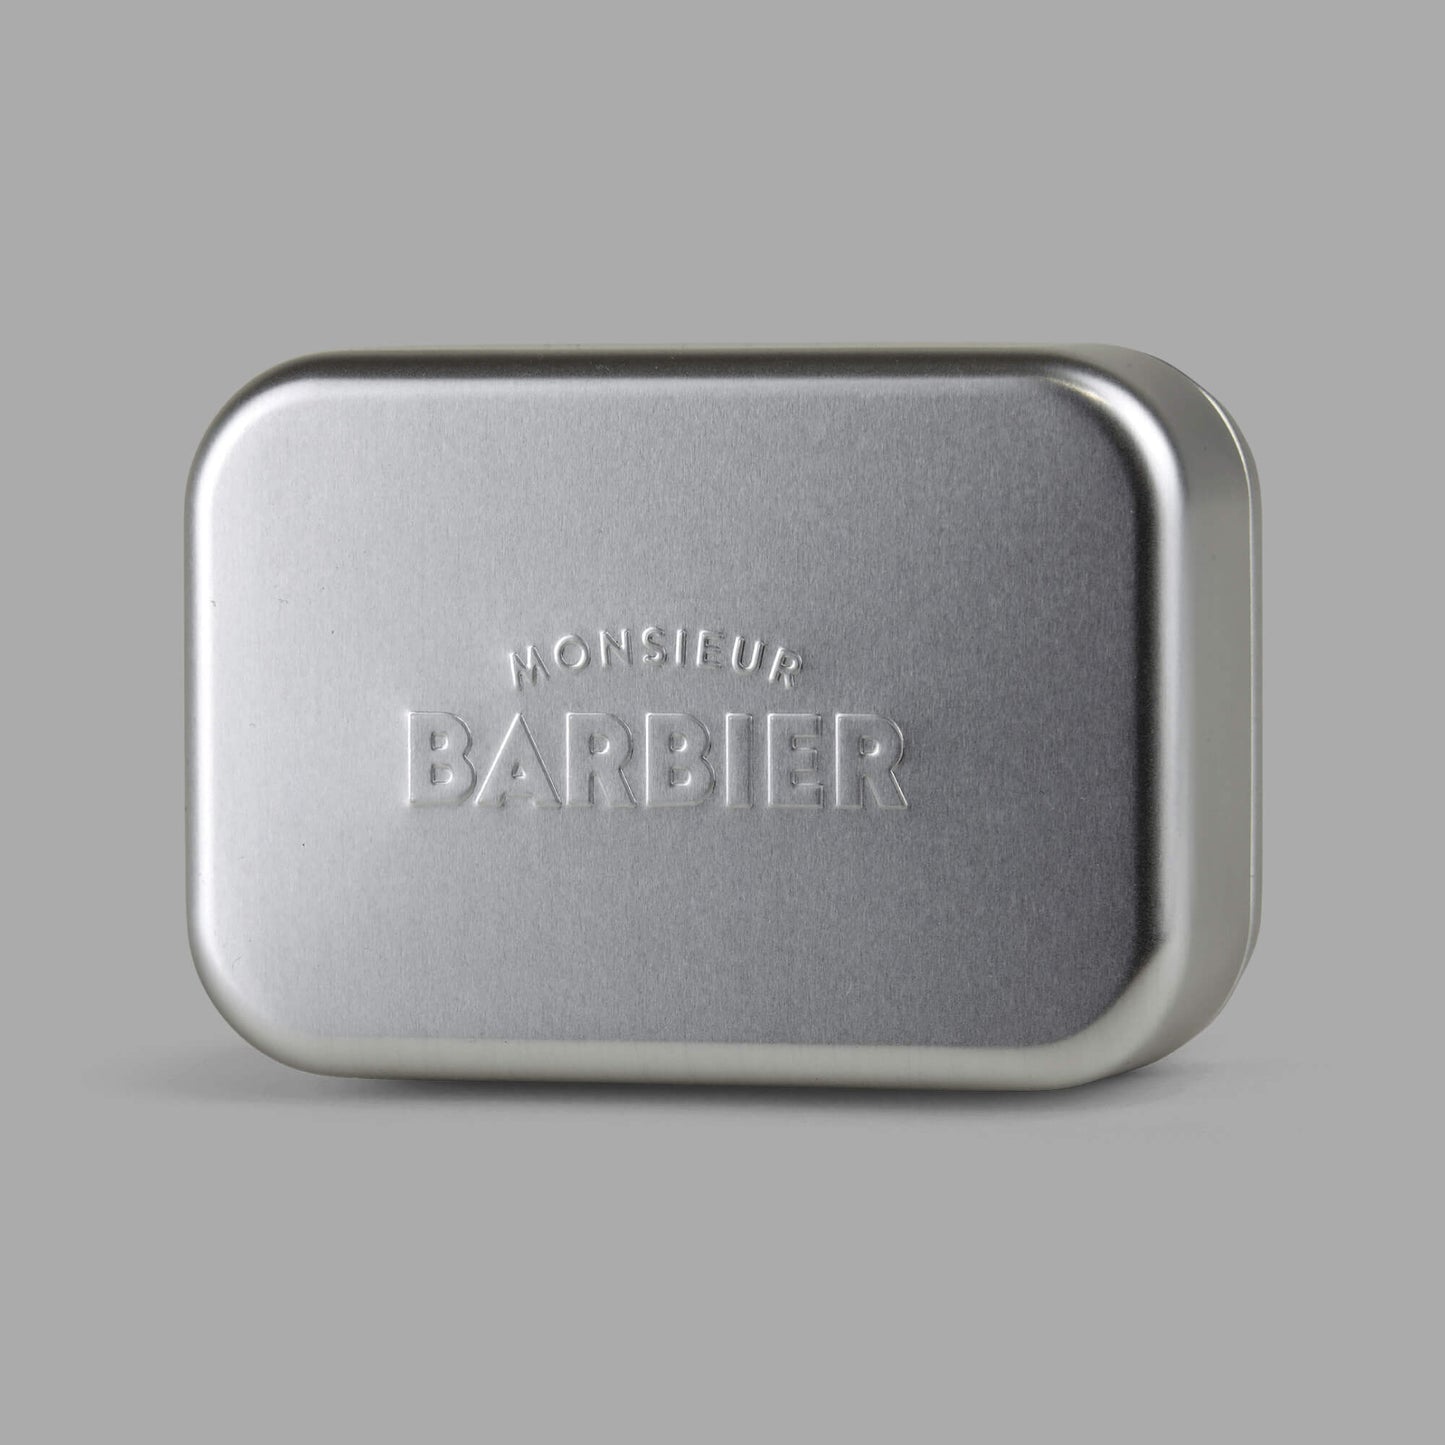 Boîte à savon SOAP & GO de Monsieur BARBIER - photo du logo BARBIER embossé sur le couvercle